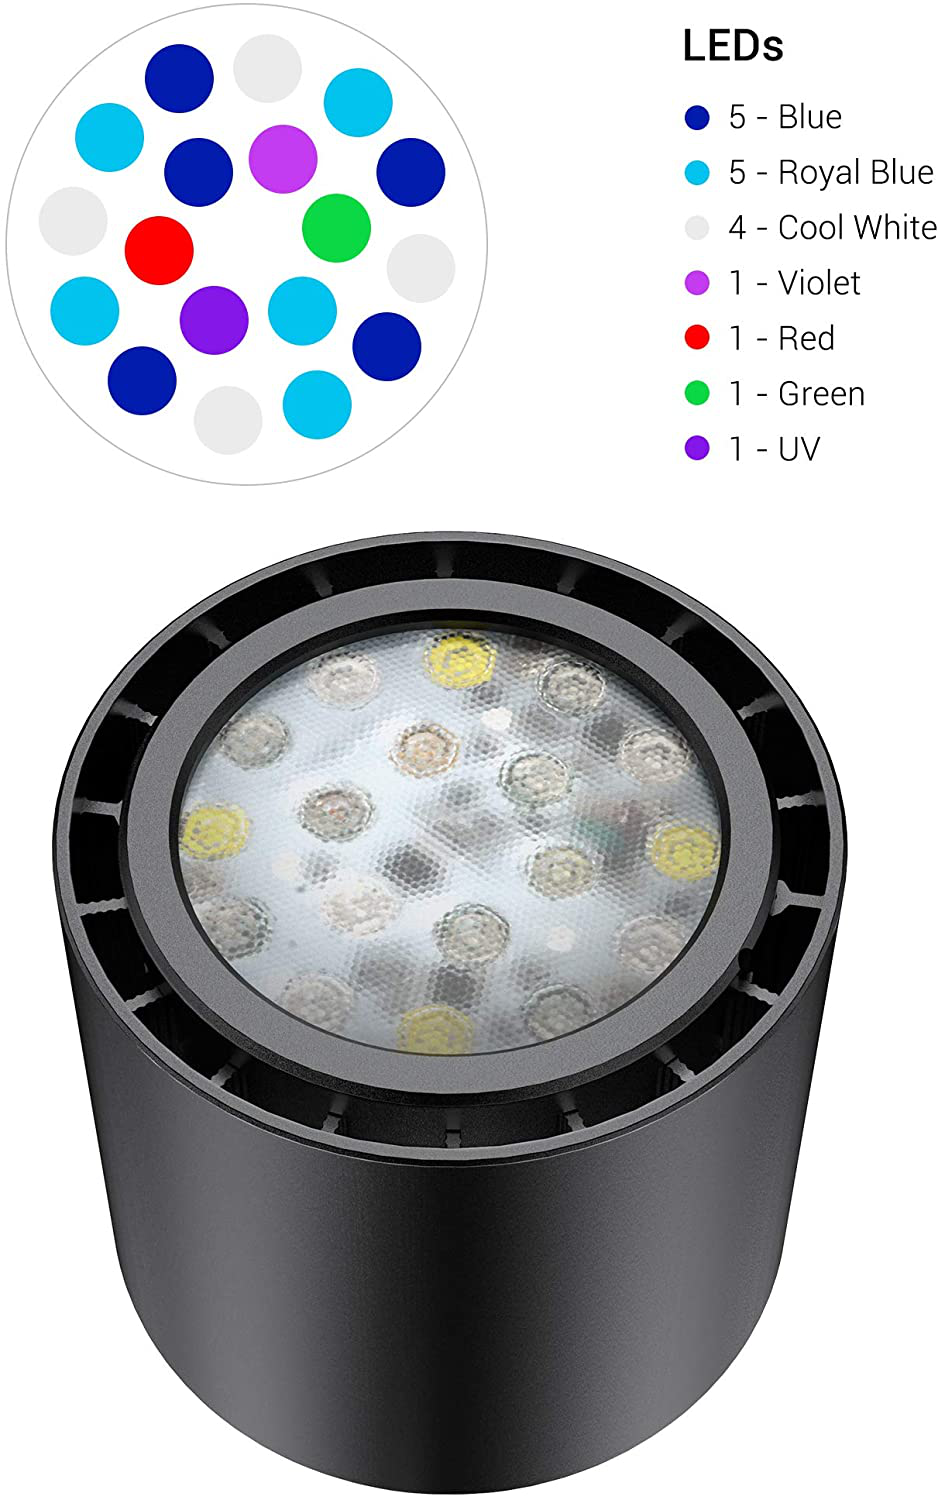 LED Lampen mit DUAL Tank (für Lampe und Heizung)